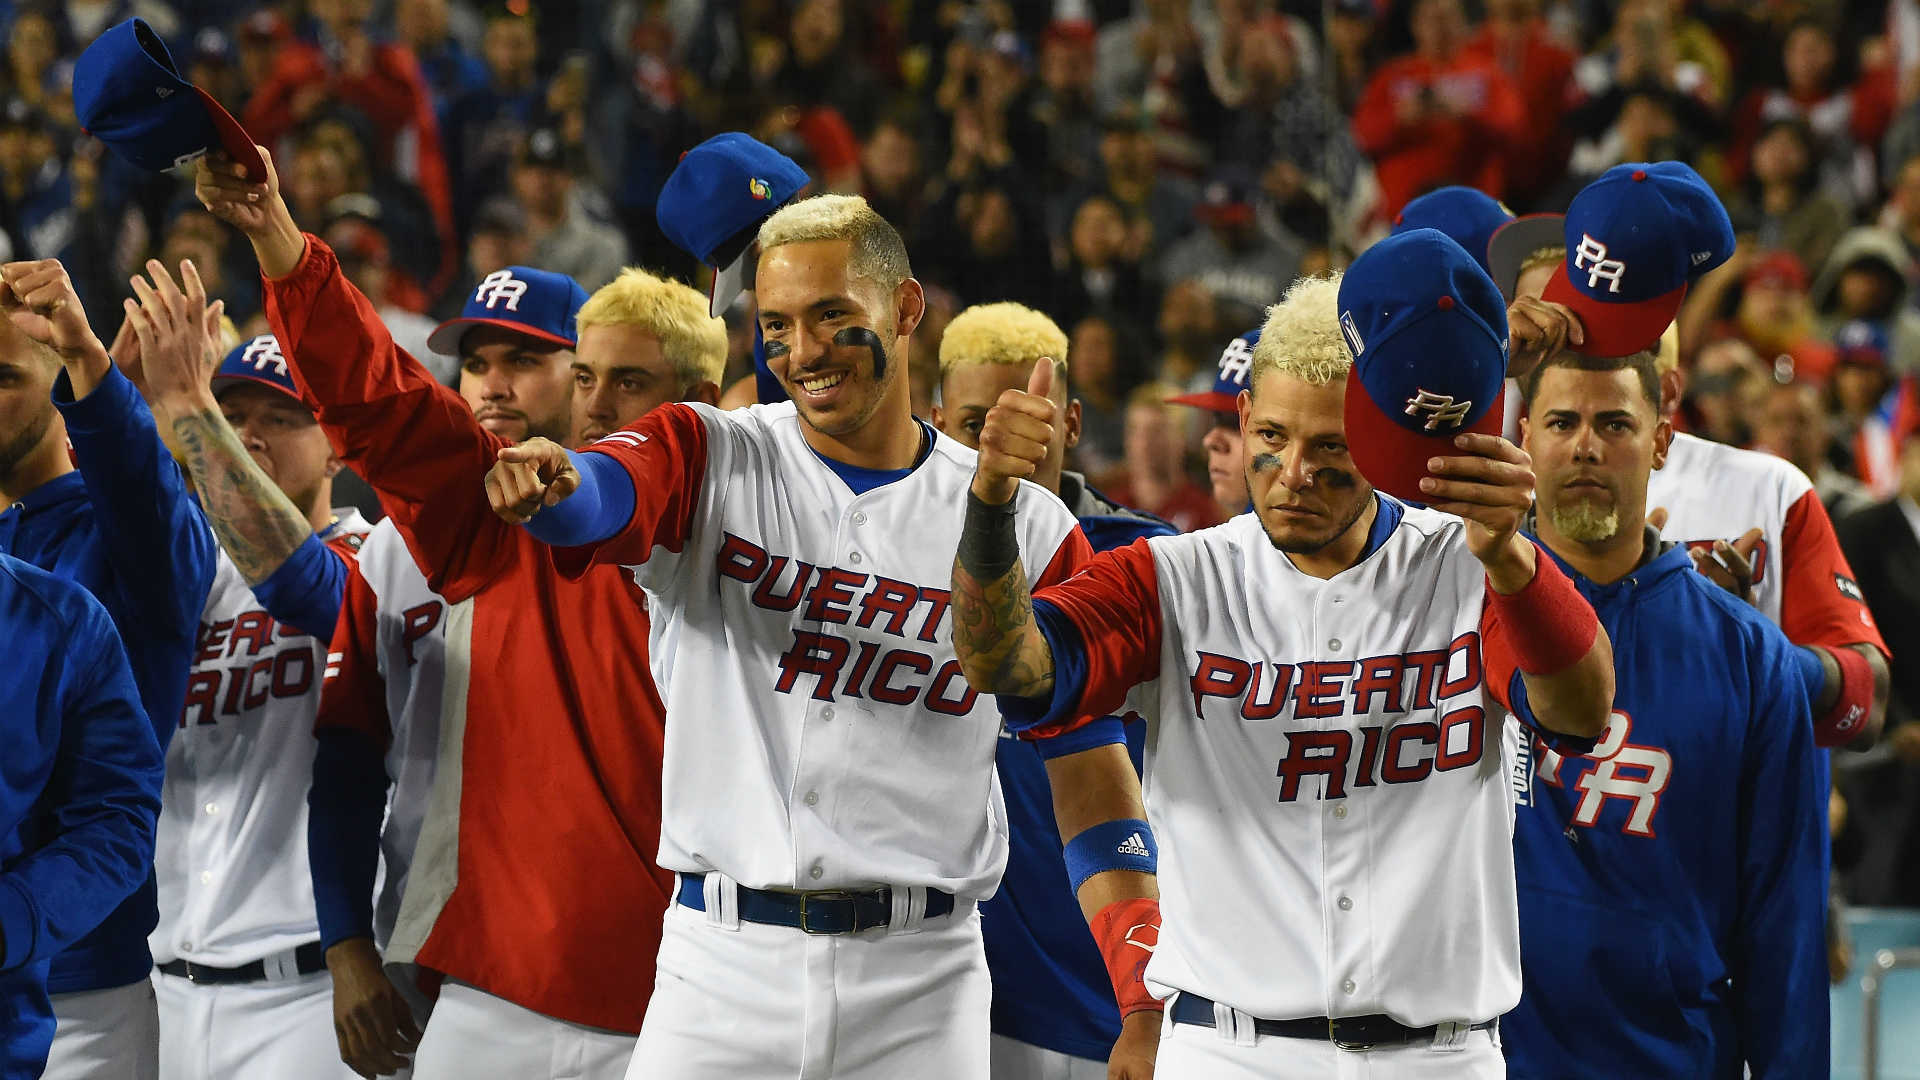 38 Top Photos Puerto Rico Baseball Team Logo / Retro Style Logos And